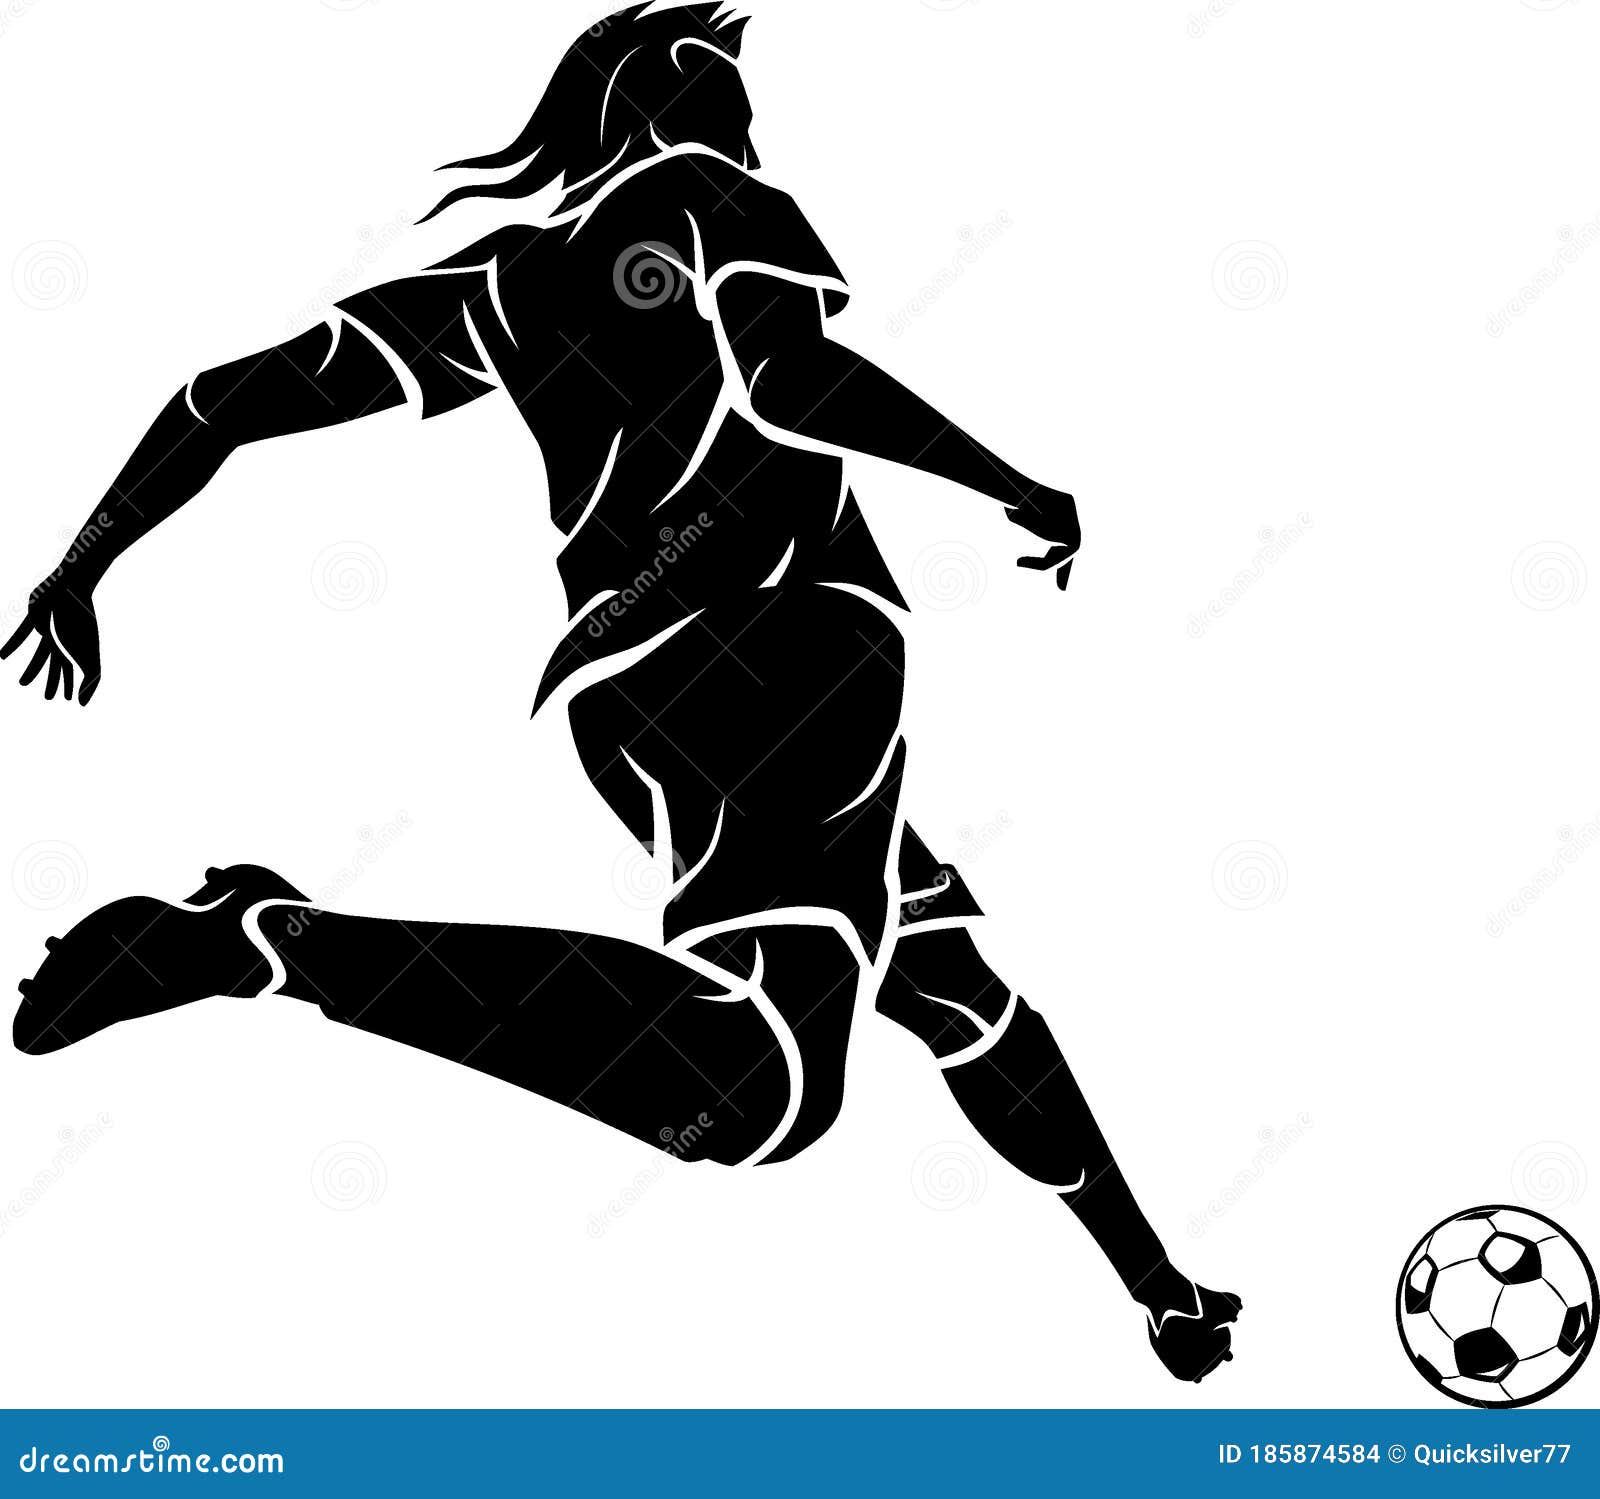 Atleta chutando bola de futebol silhueta de jogador de futebol